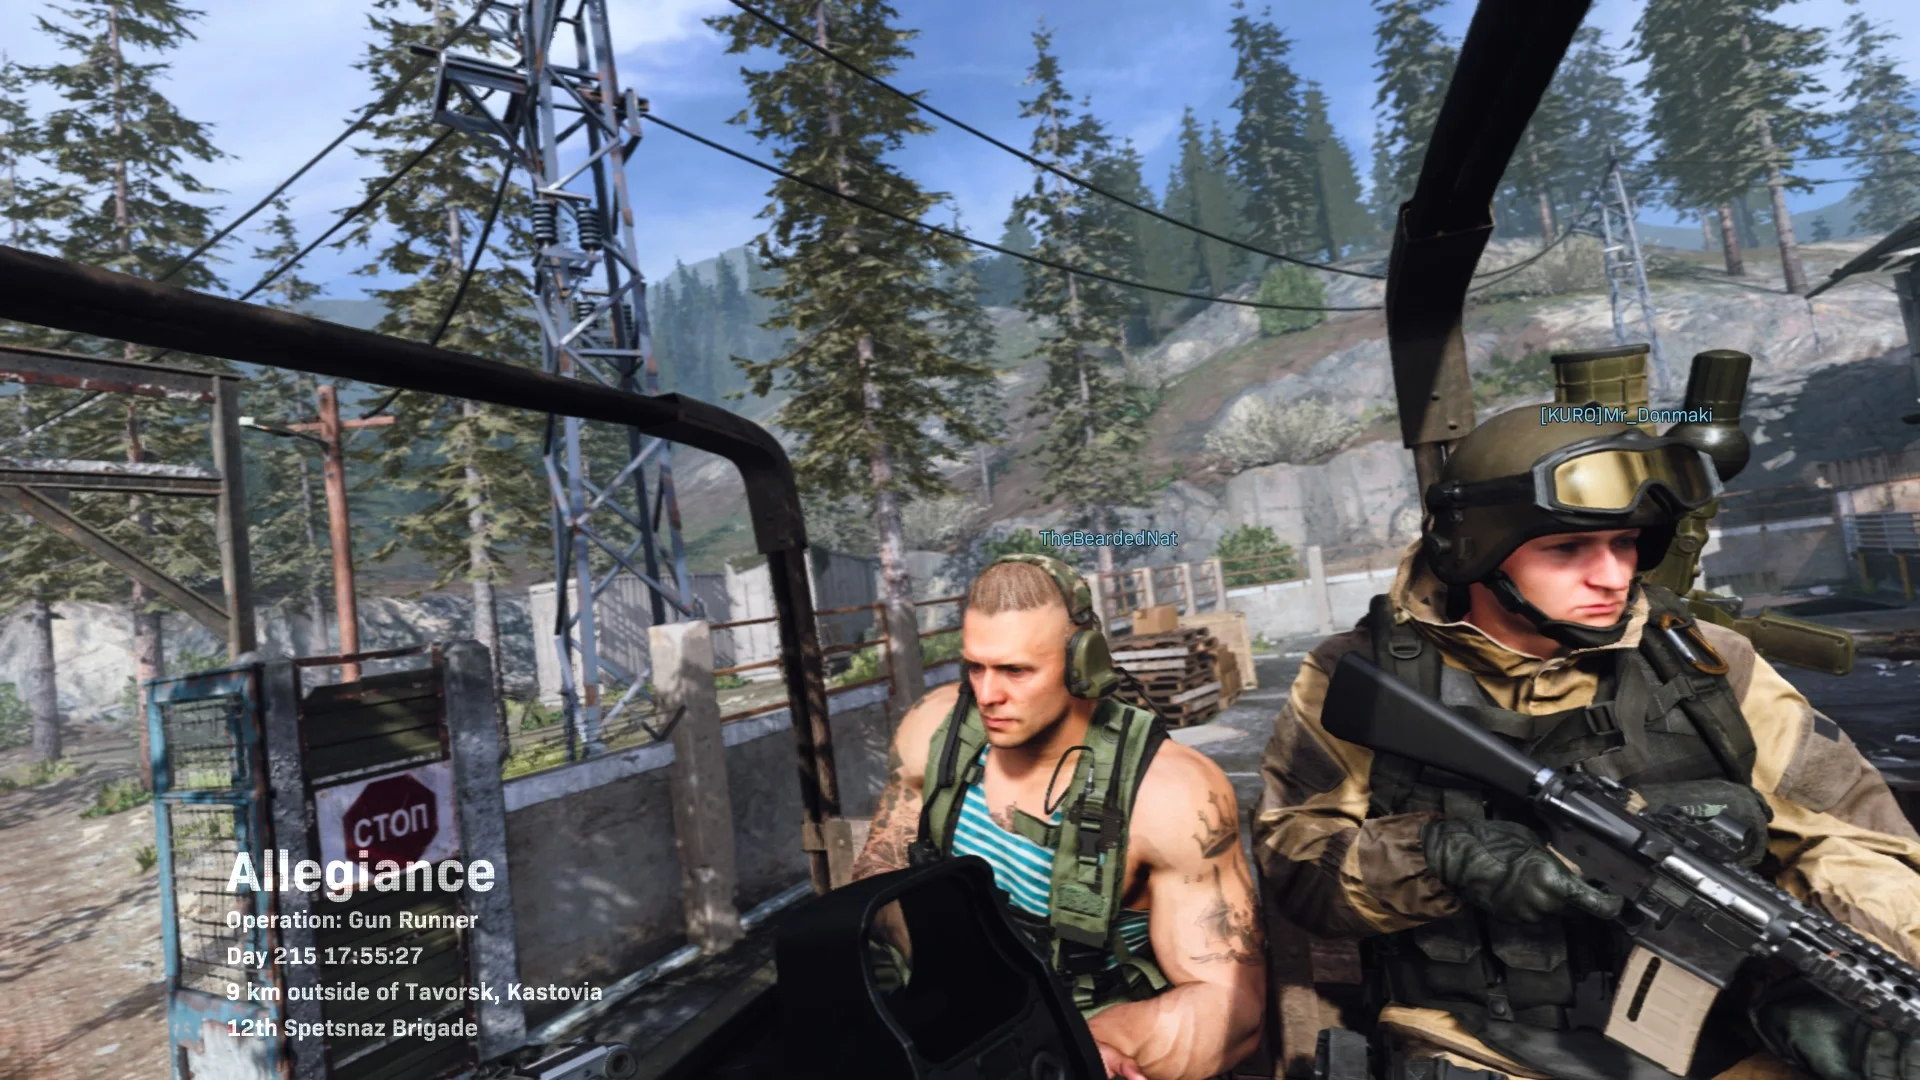 Россию в мультиплеере Call of Duty: Modern Warfare частично переименовали в Кастовию - фото 2